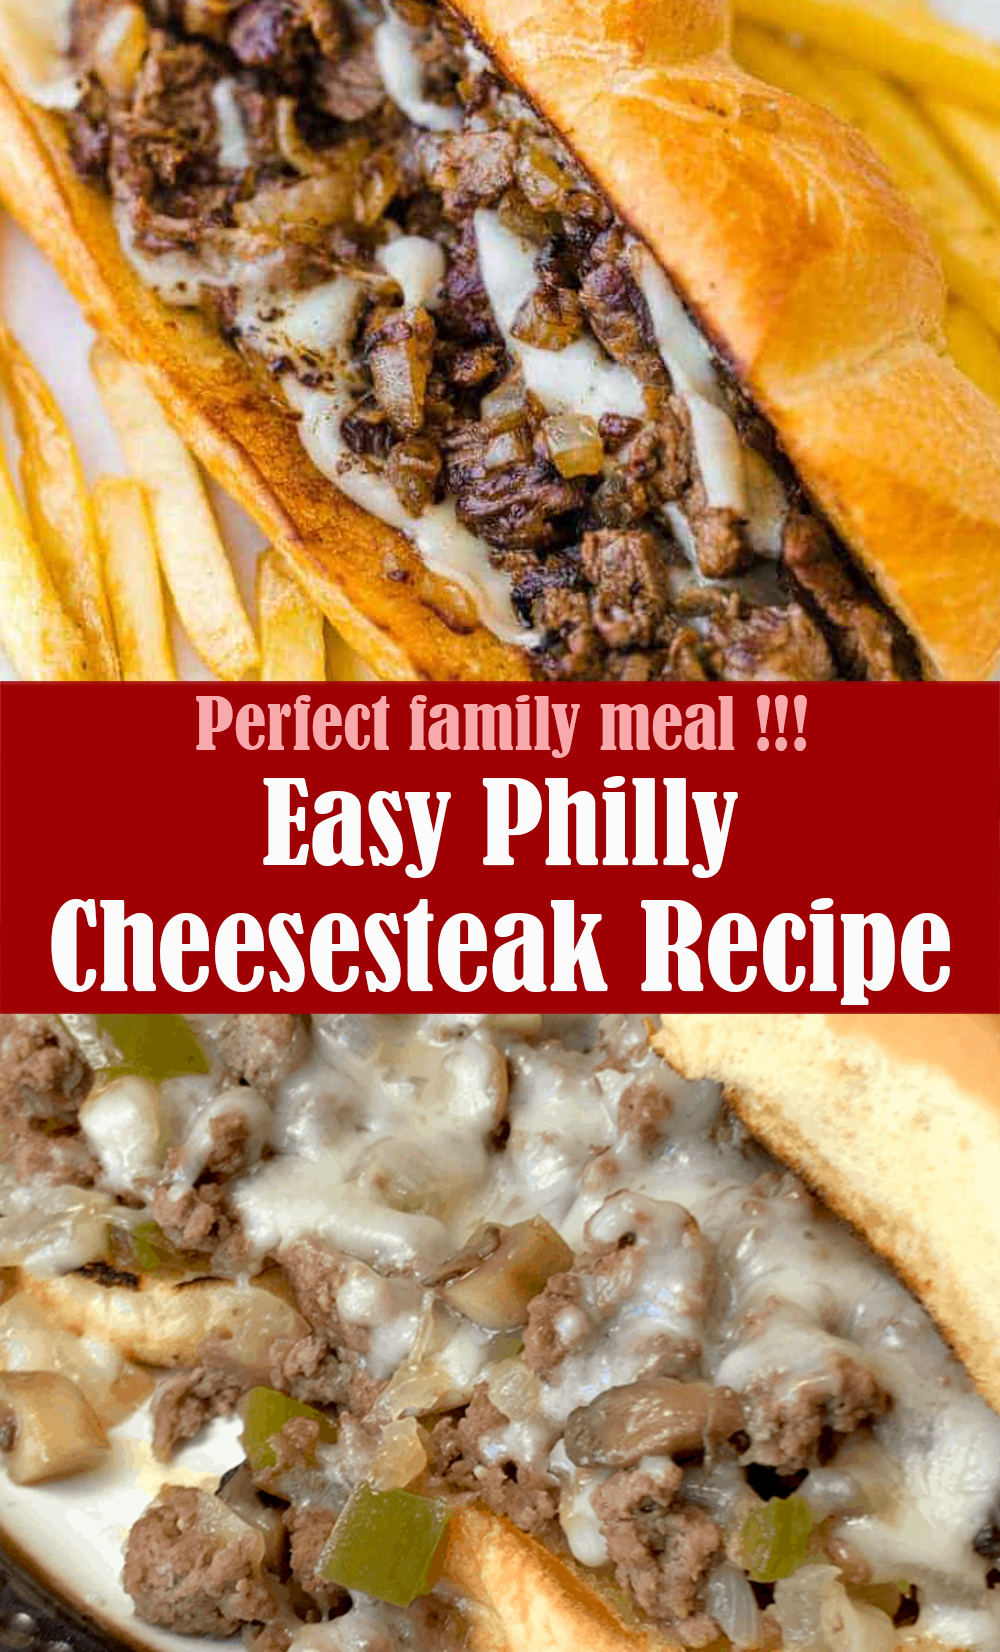 Easy Philly Cheesesteak Recipe